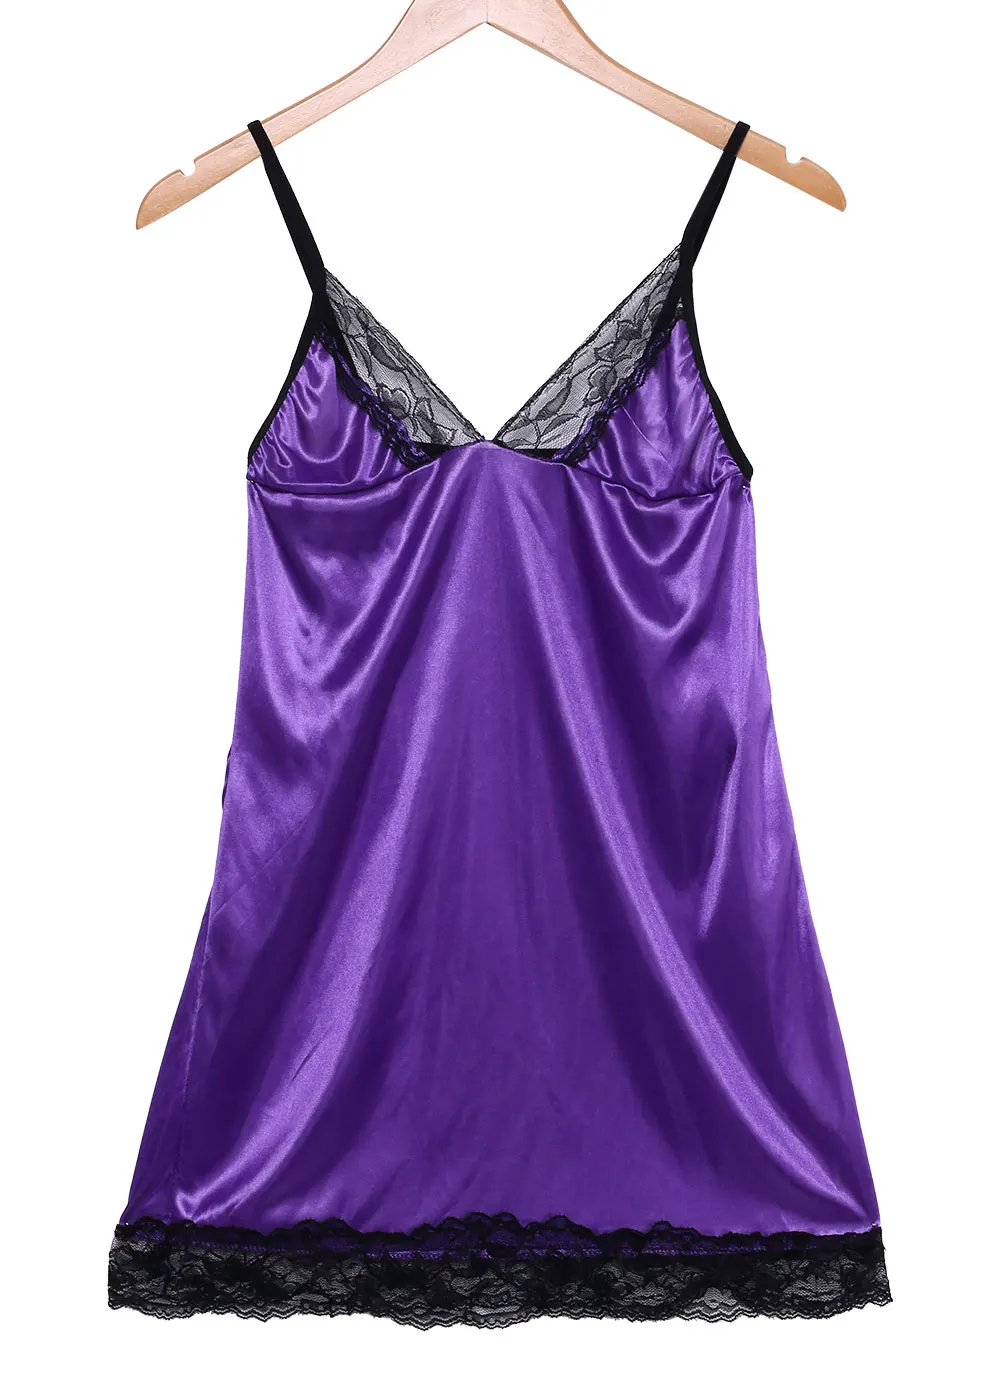 Женское белье Babydoll Ночное белье кружевное платье ночное белье стринги эротические женские пижамы сексуальные костюмы - Цвет: Фиолетовый